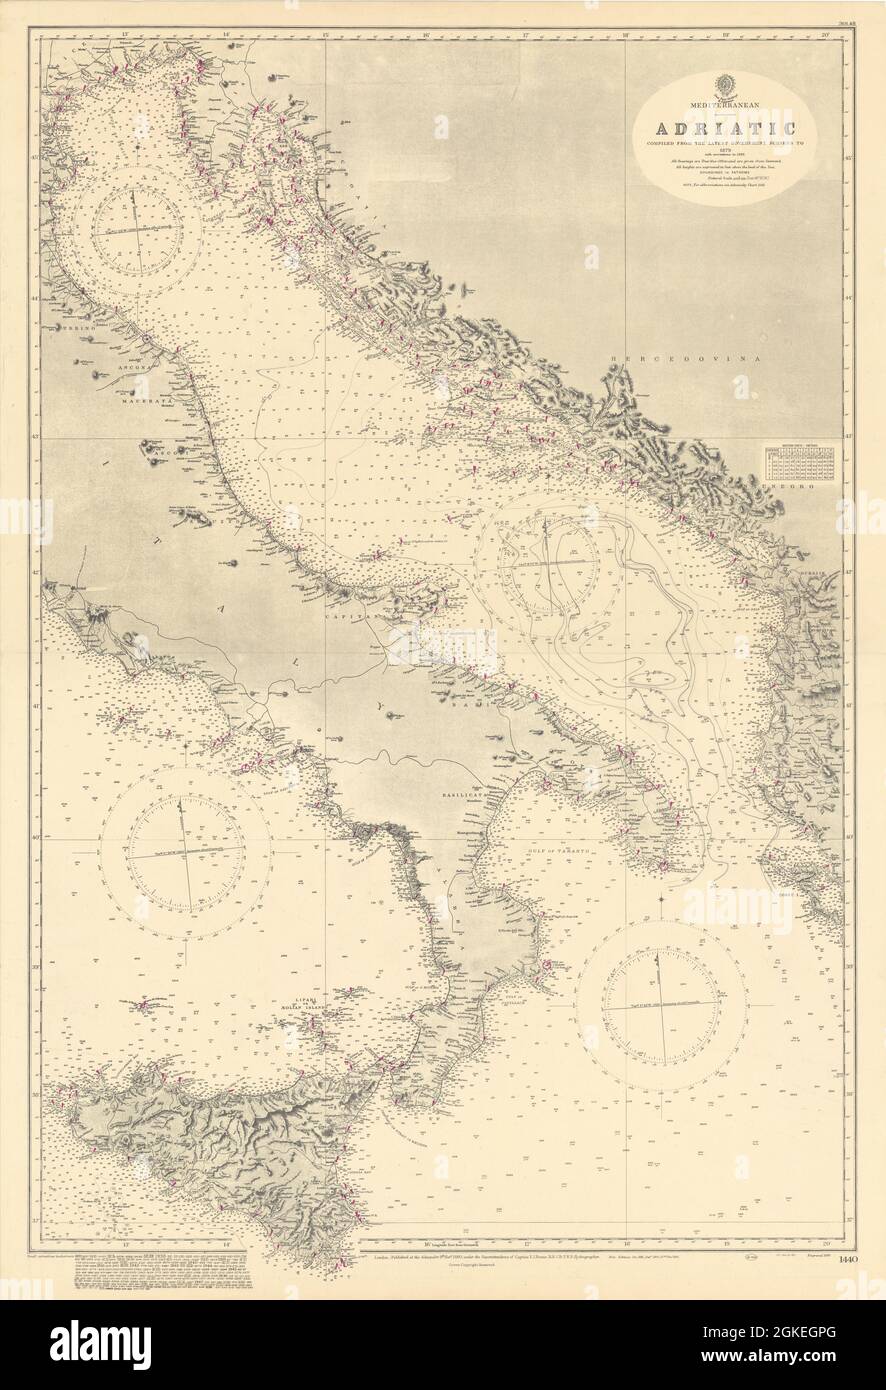 Mediterraneo Adriatico Italia Croazia. ADMIRALTY Sea chart 1880 (1949) vecchia mappa Foto Stock